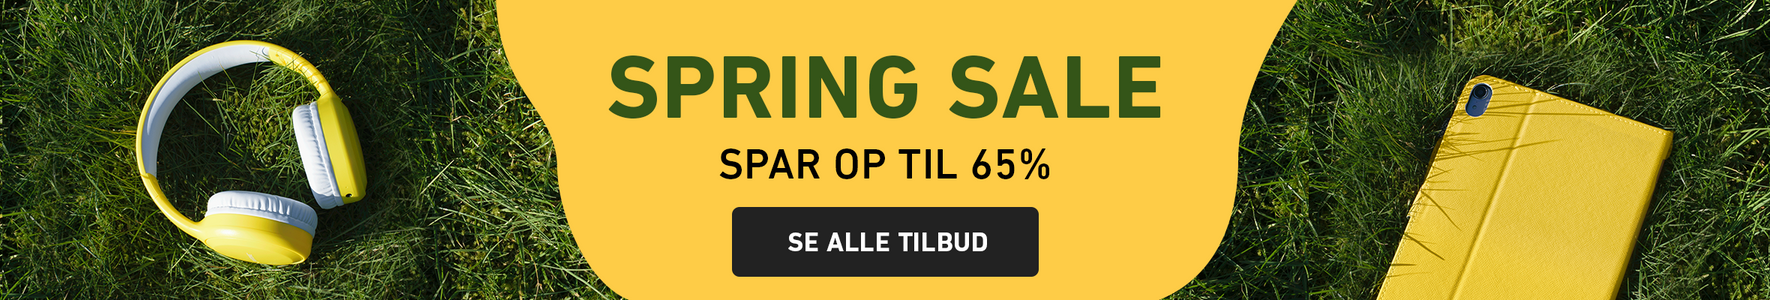 Spring Sale - Spar op til 65% - Se alle tilbudene